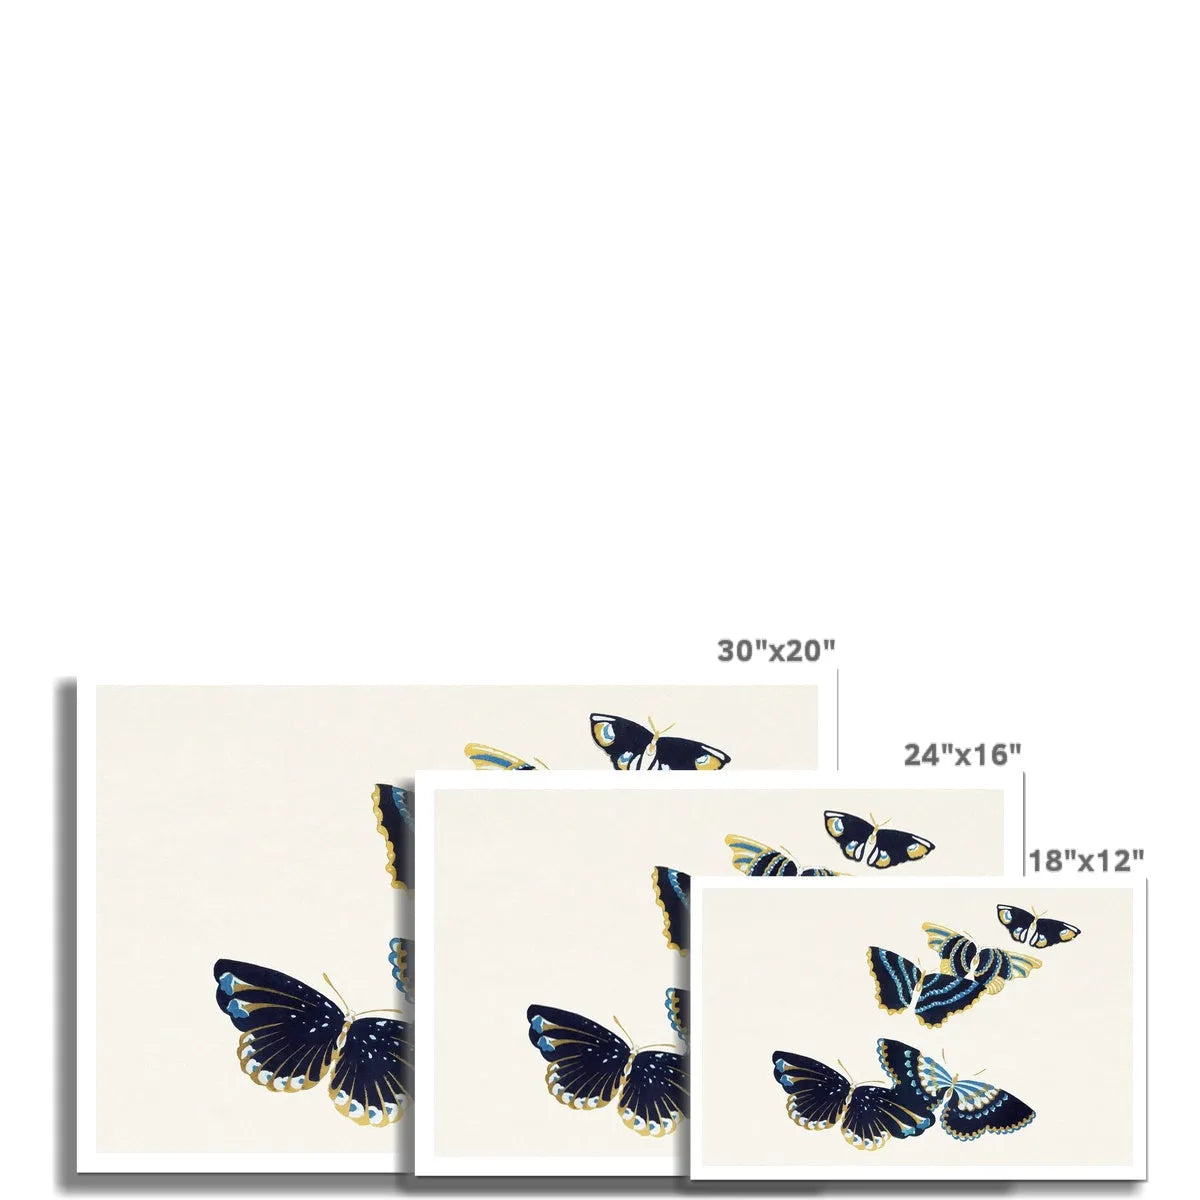 Japanese Butterflies In Blue Too By Kamisaka Sekka Fine Art Print - Posters Prints & Visual Artwork - Aesthetic Art